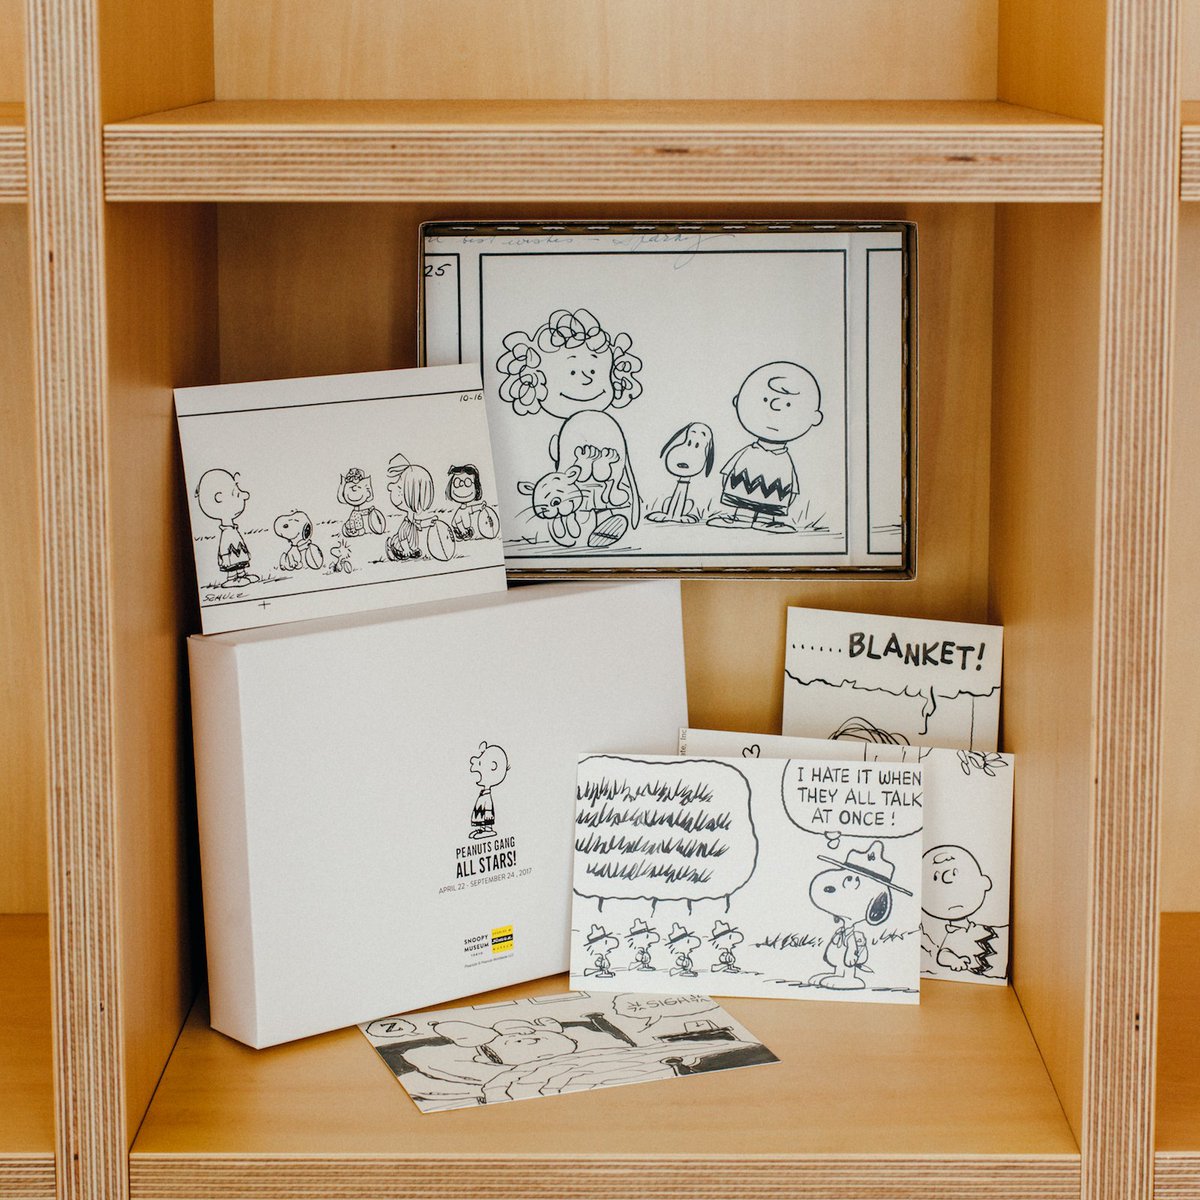 Snoopy Museum Tokyo در توییتر ブラウンズストア 開館1周年展グッズ ポストカード ボックスセット ピーナッツ ギャング オールスターズ 展に展示される原画のポストカード コンプリートボックスです コミック原寸大のスペシャルカード入り 5 000円